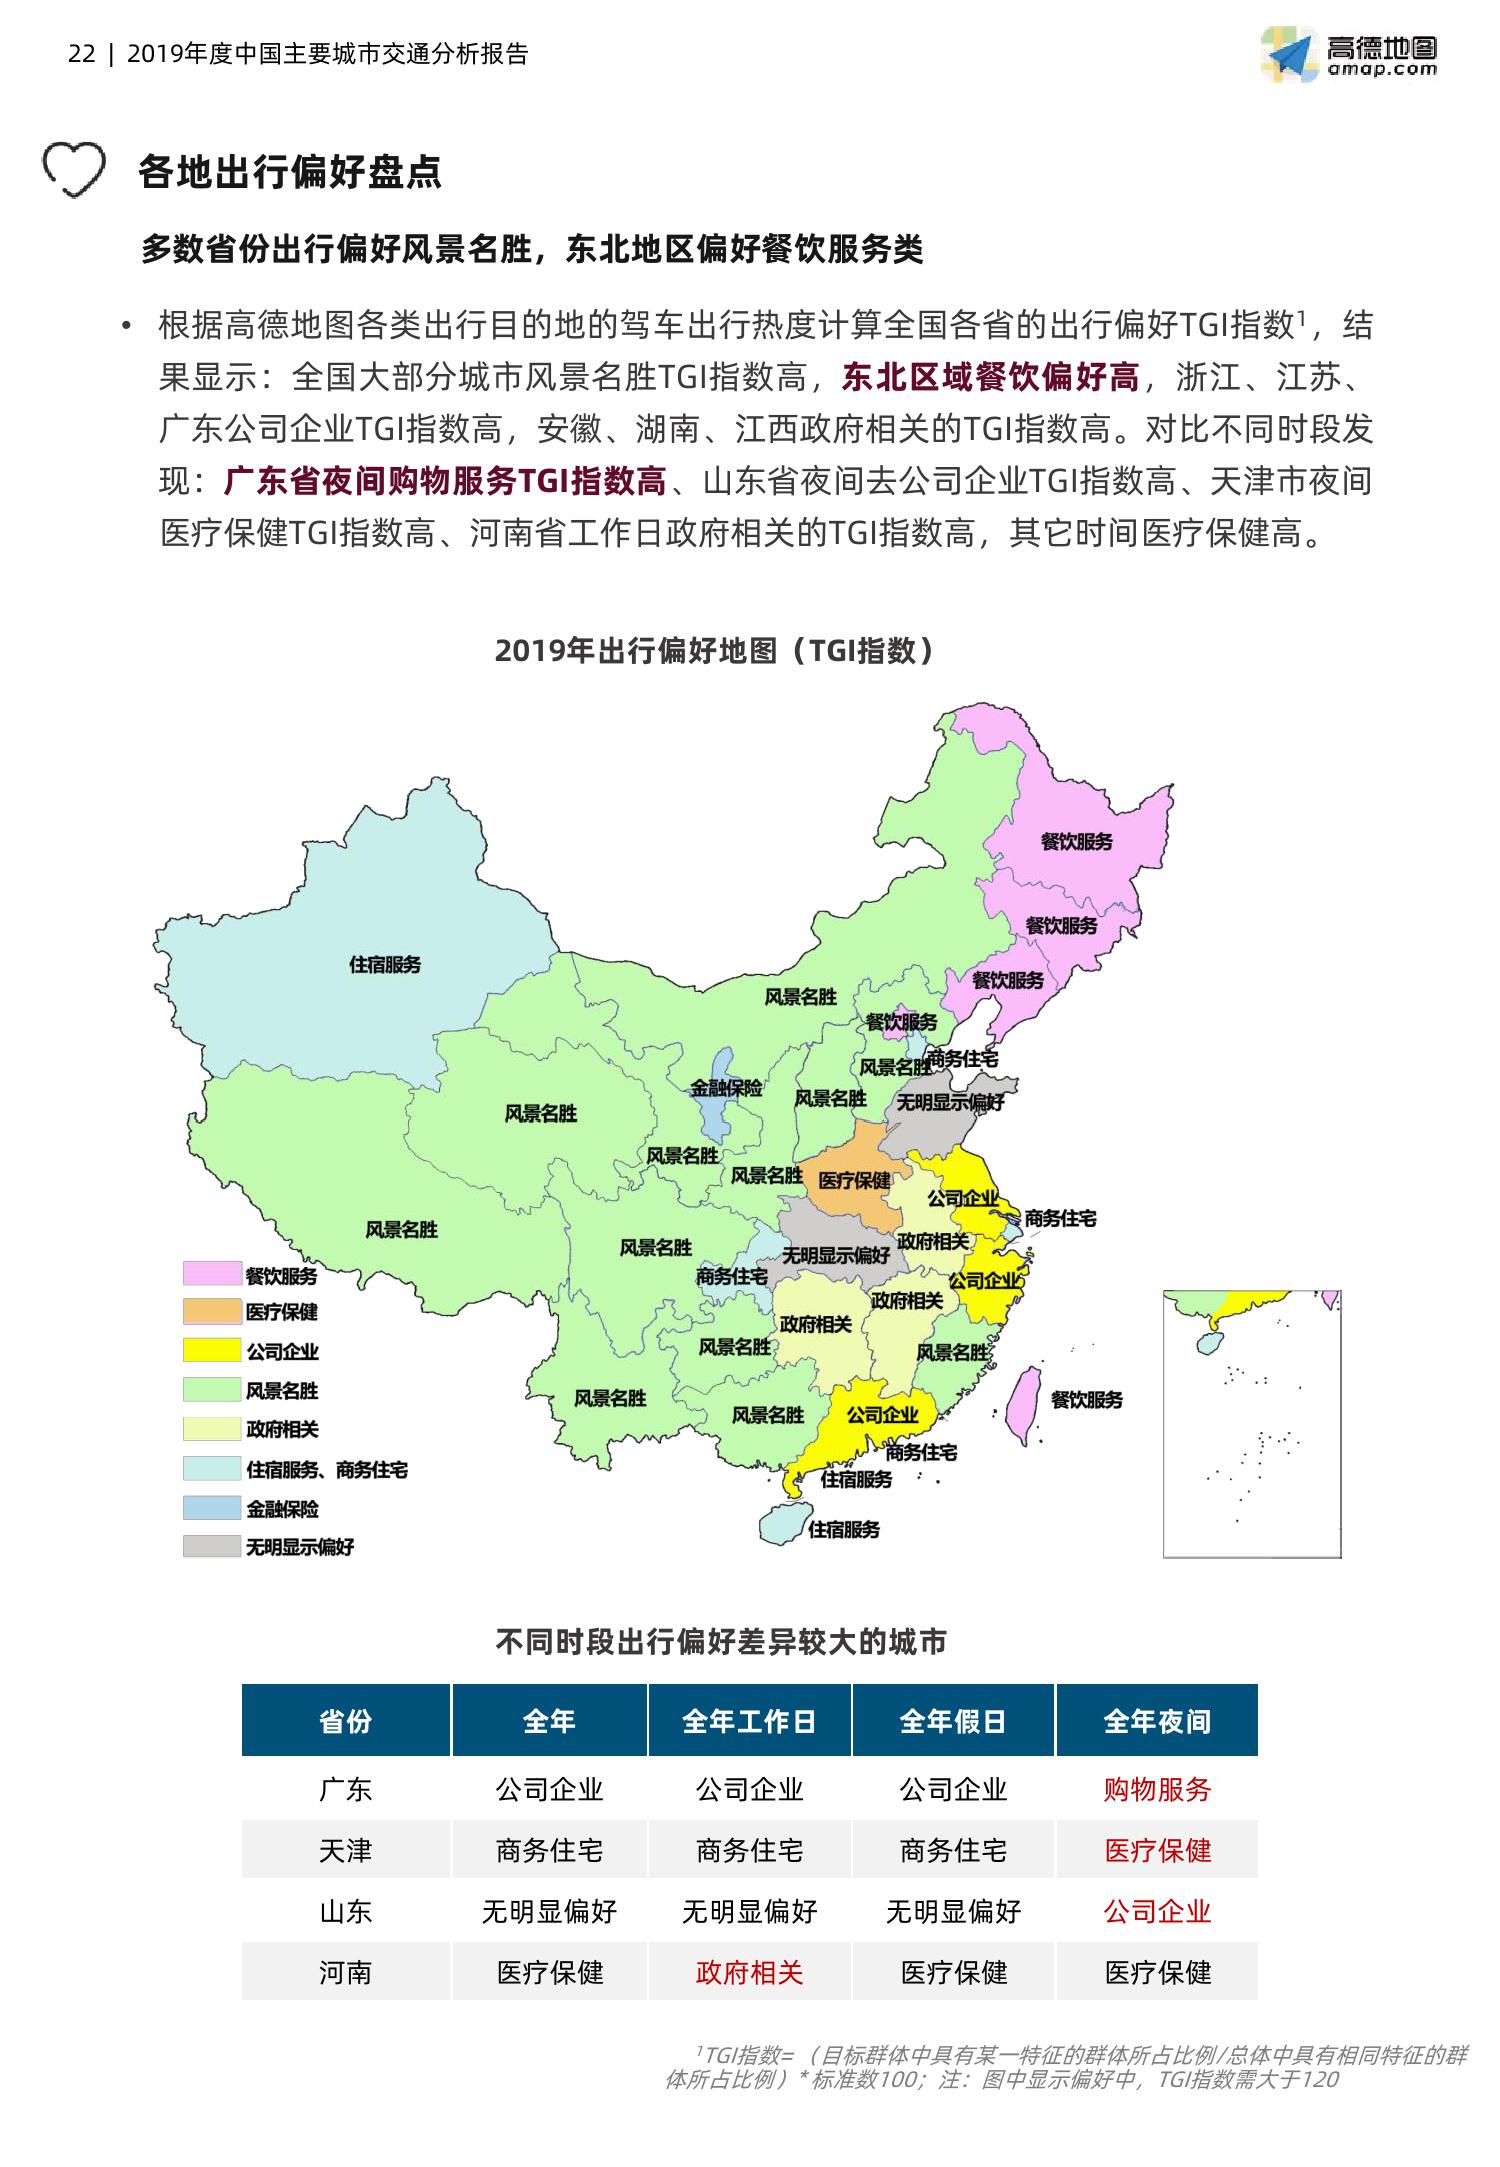 高德地图:2019中国主要城市交通分析报告